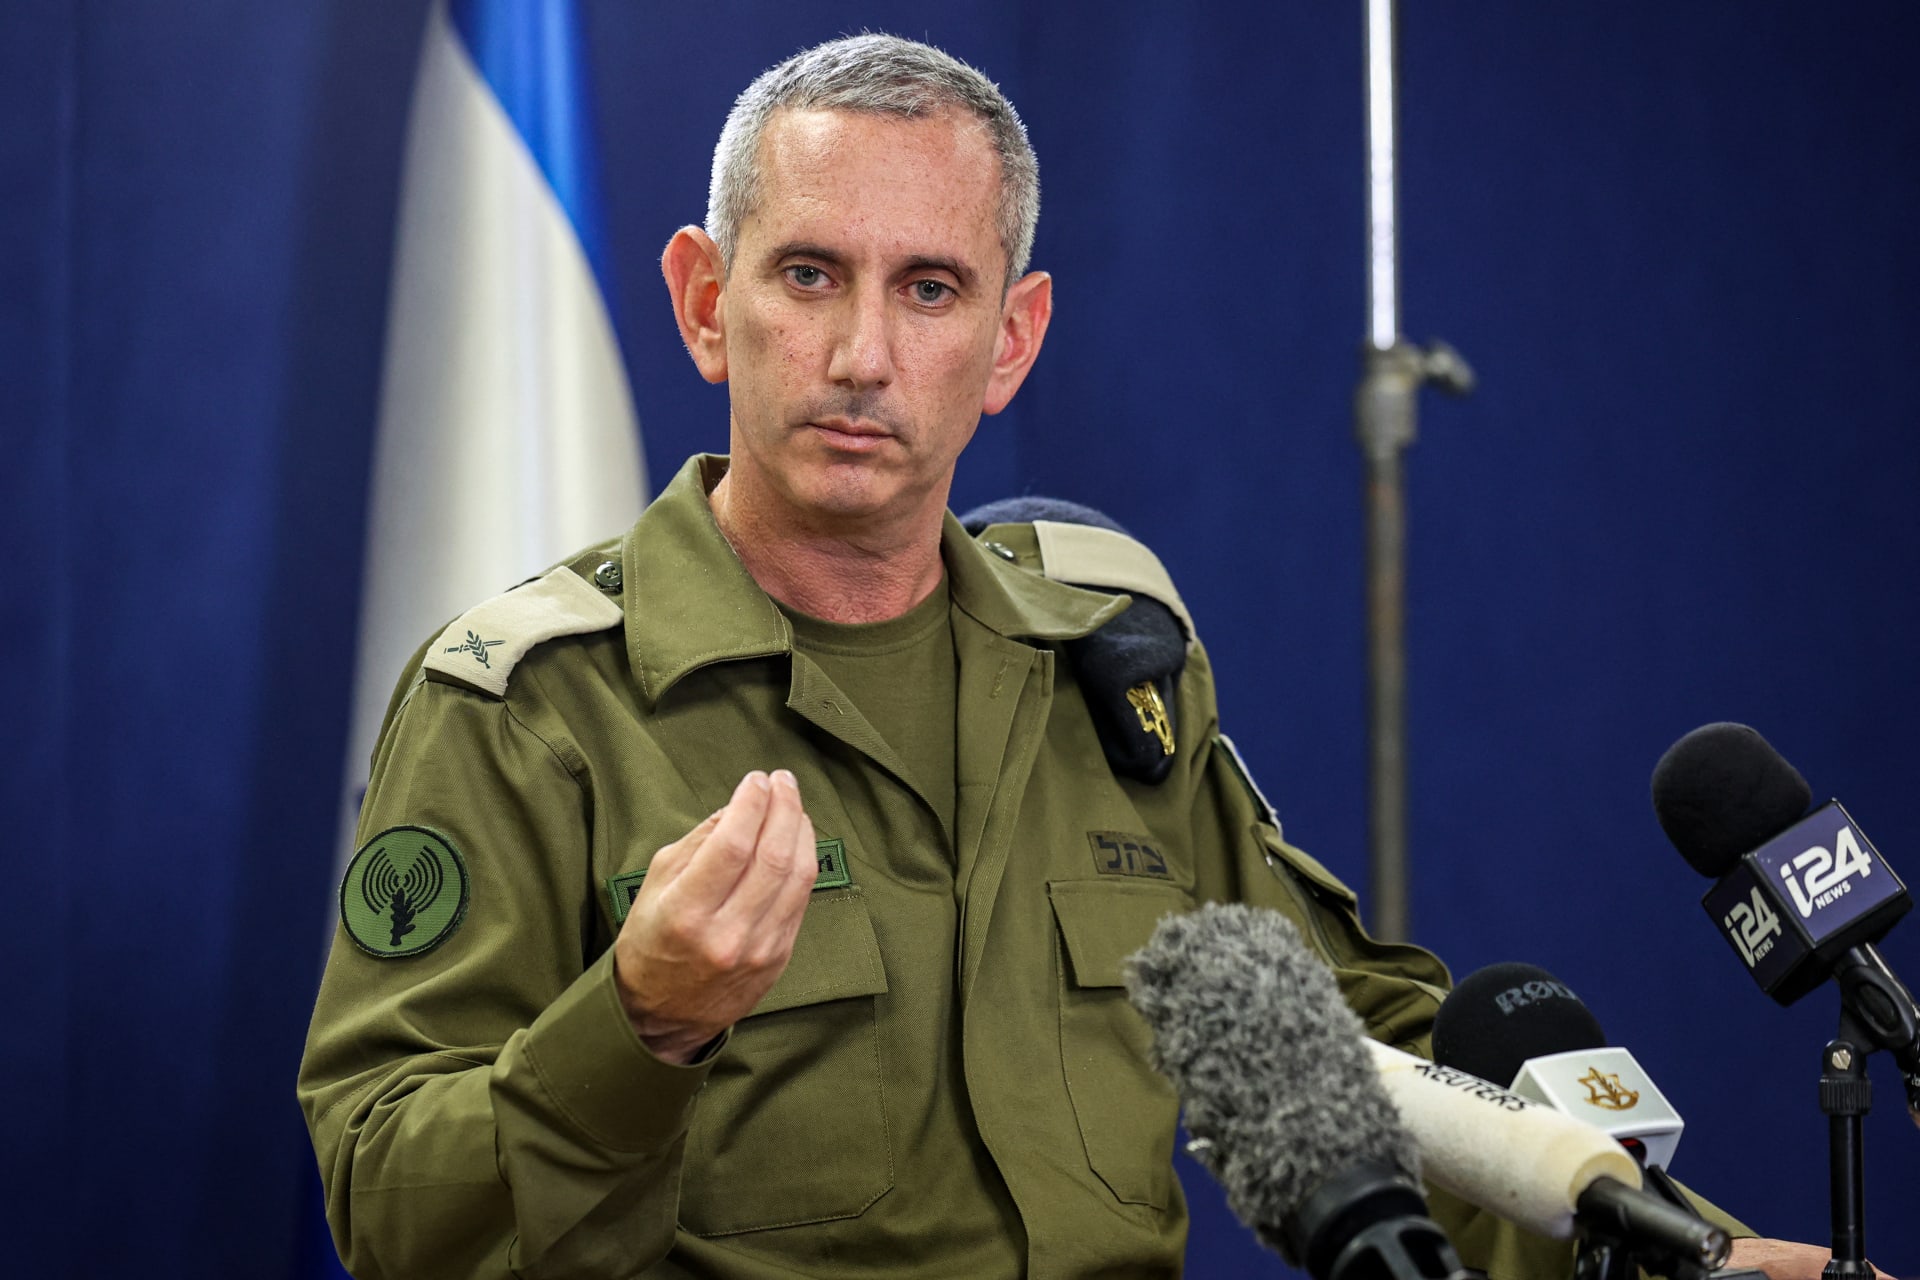 الجيش الإسرائيلي: عثرنا على جثث 3 رهائن في قطاع غزة